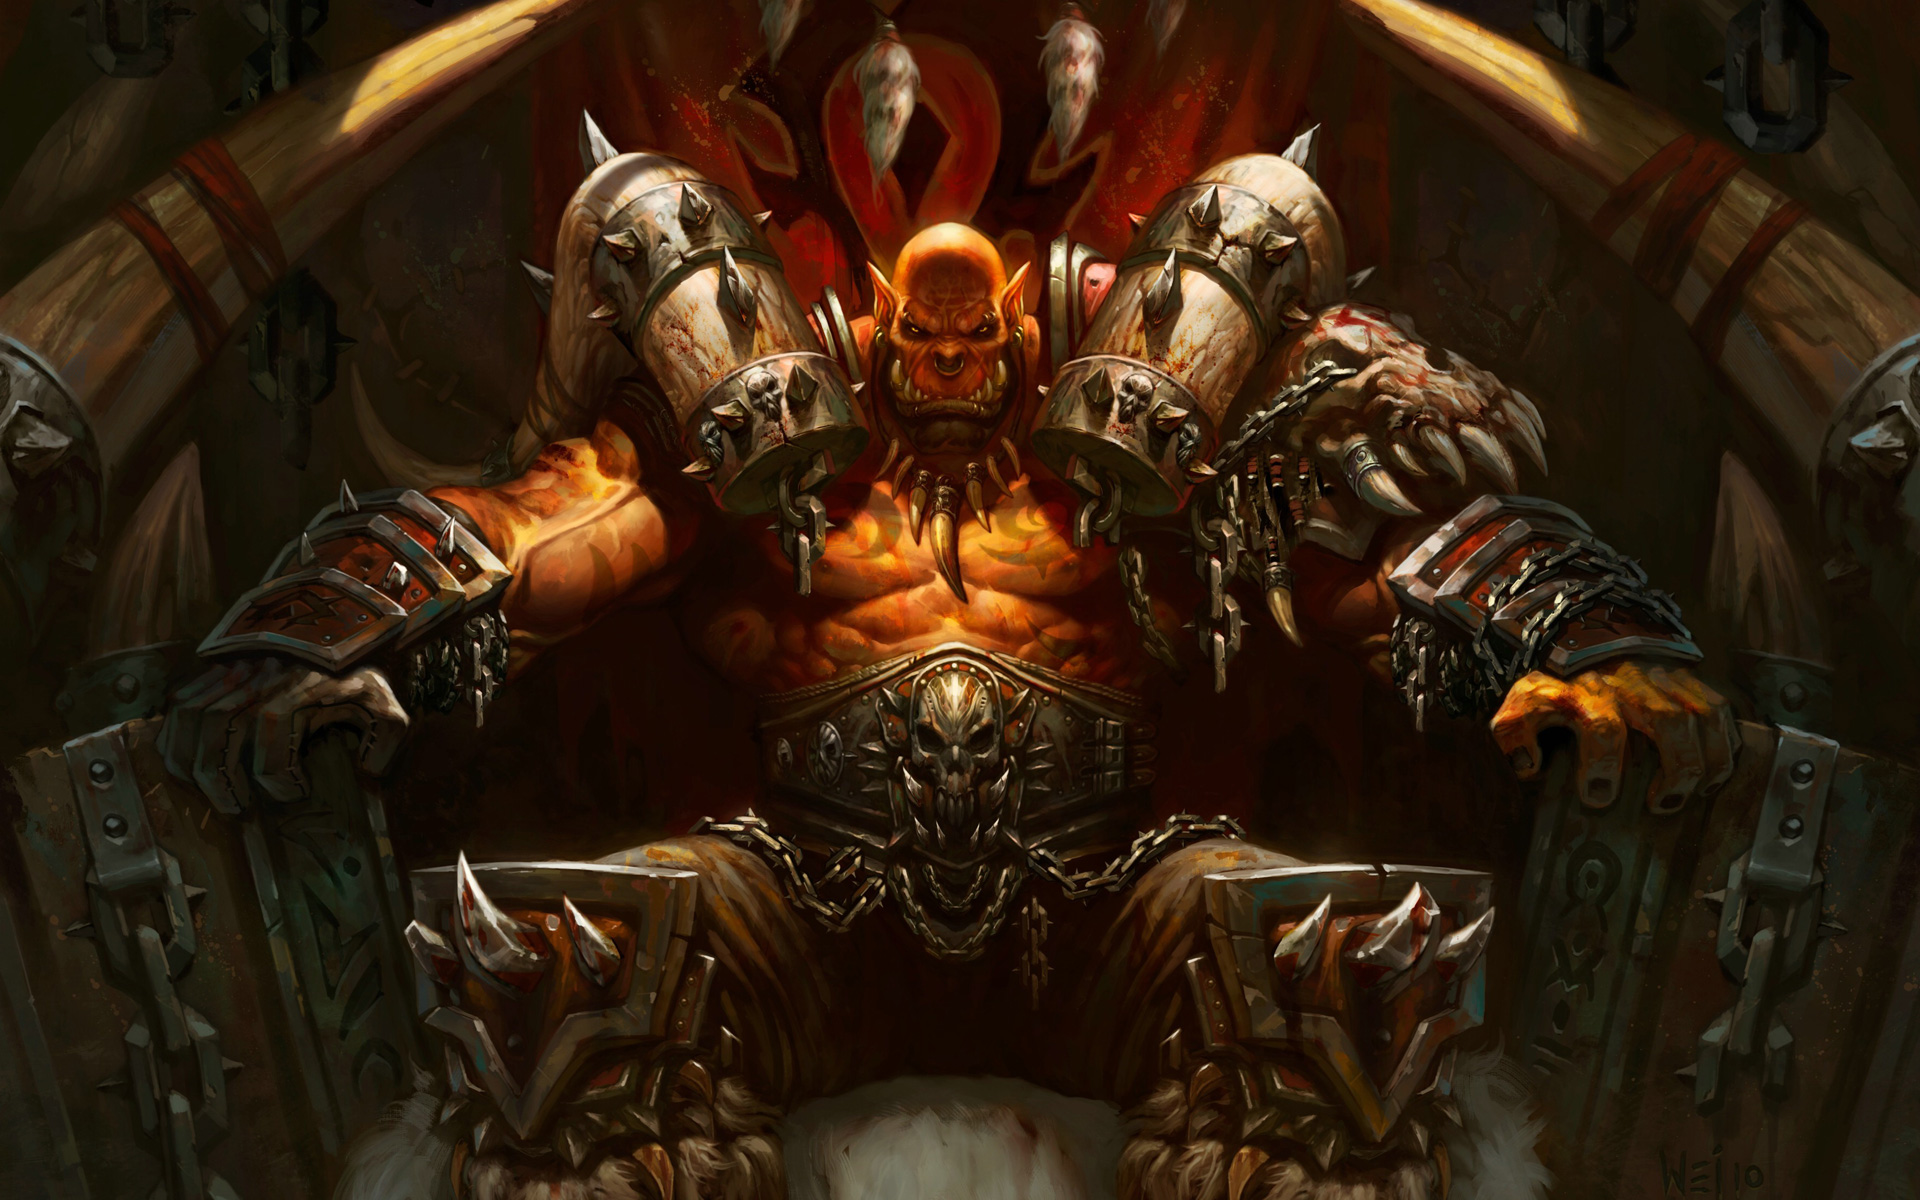 Hearthstone: Heroes of Warcraft HD Wallpaper by Wei Wang